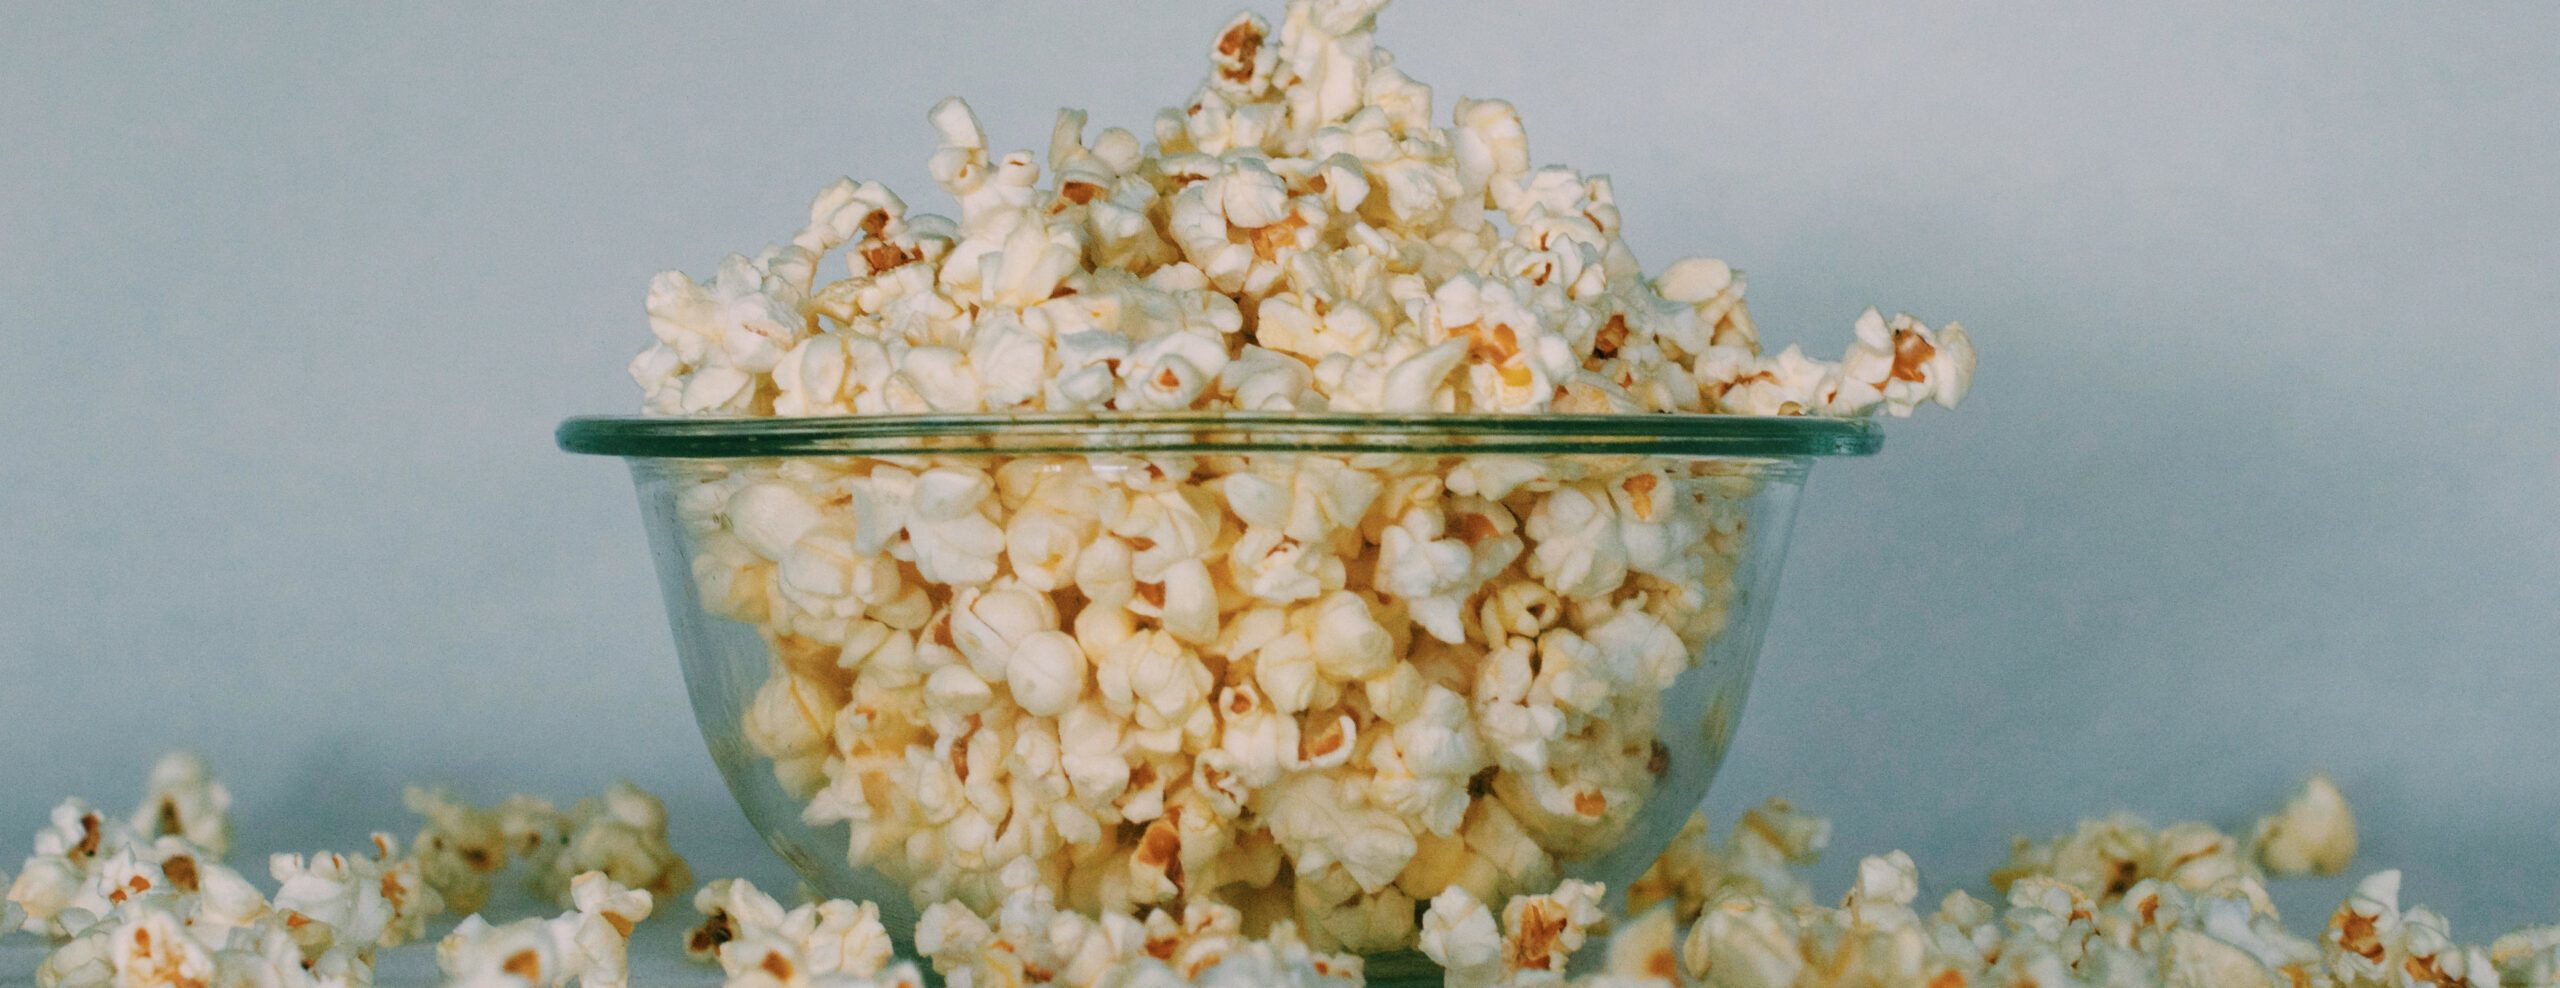 Eine Glasschale Popcorn